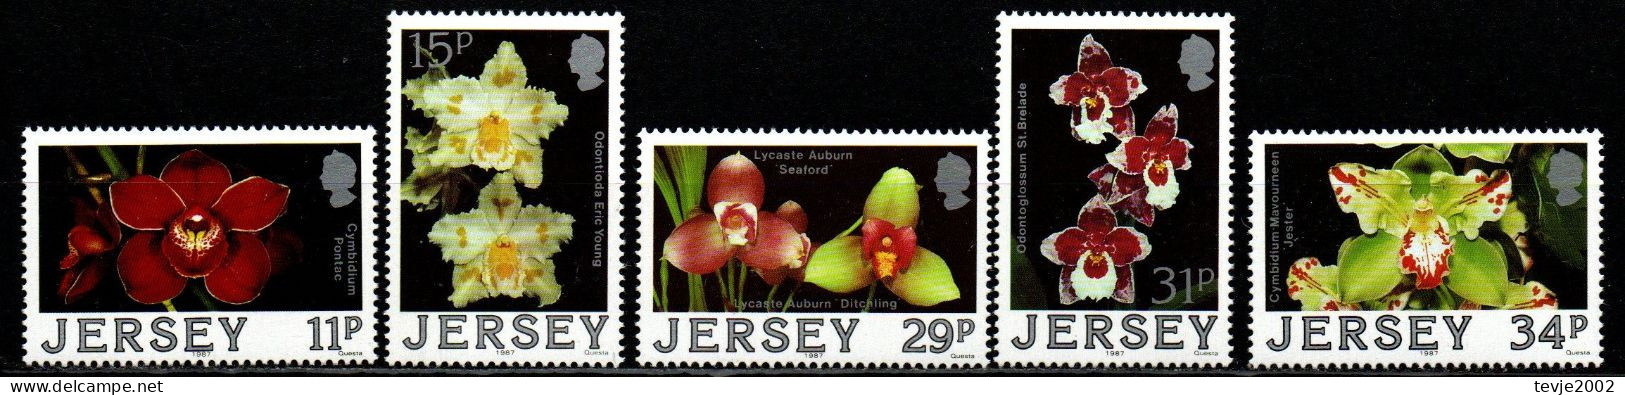 Jersey 1988 - Mi.Nr. 425 - 429 - Postfrisch MNH - Blumen Flowers Orchideen Orchids - Orchids